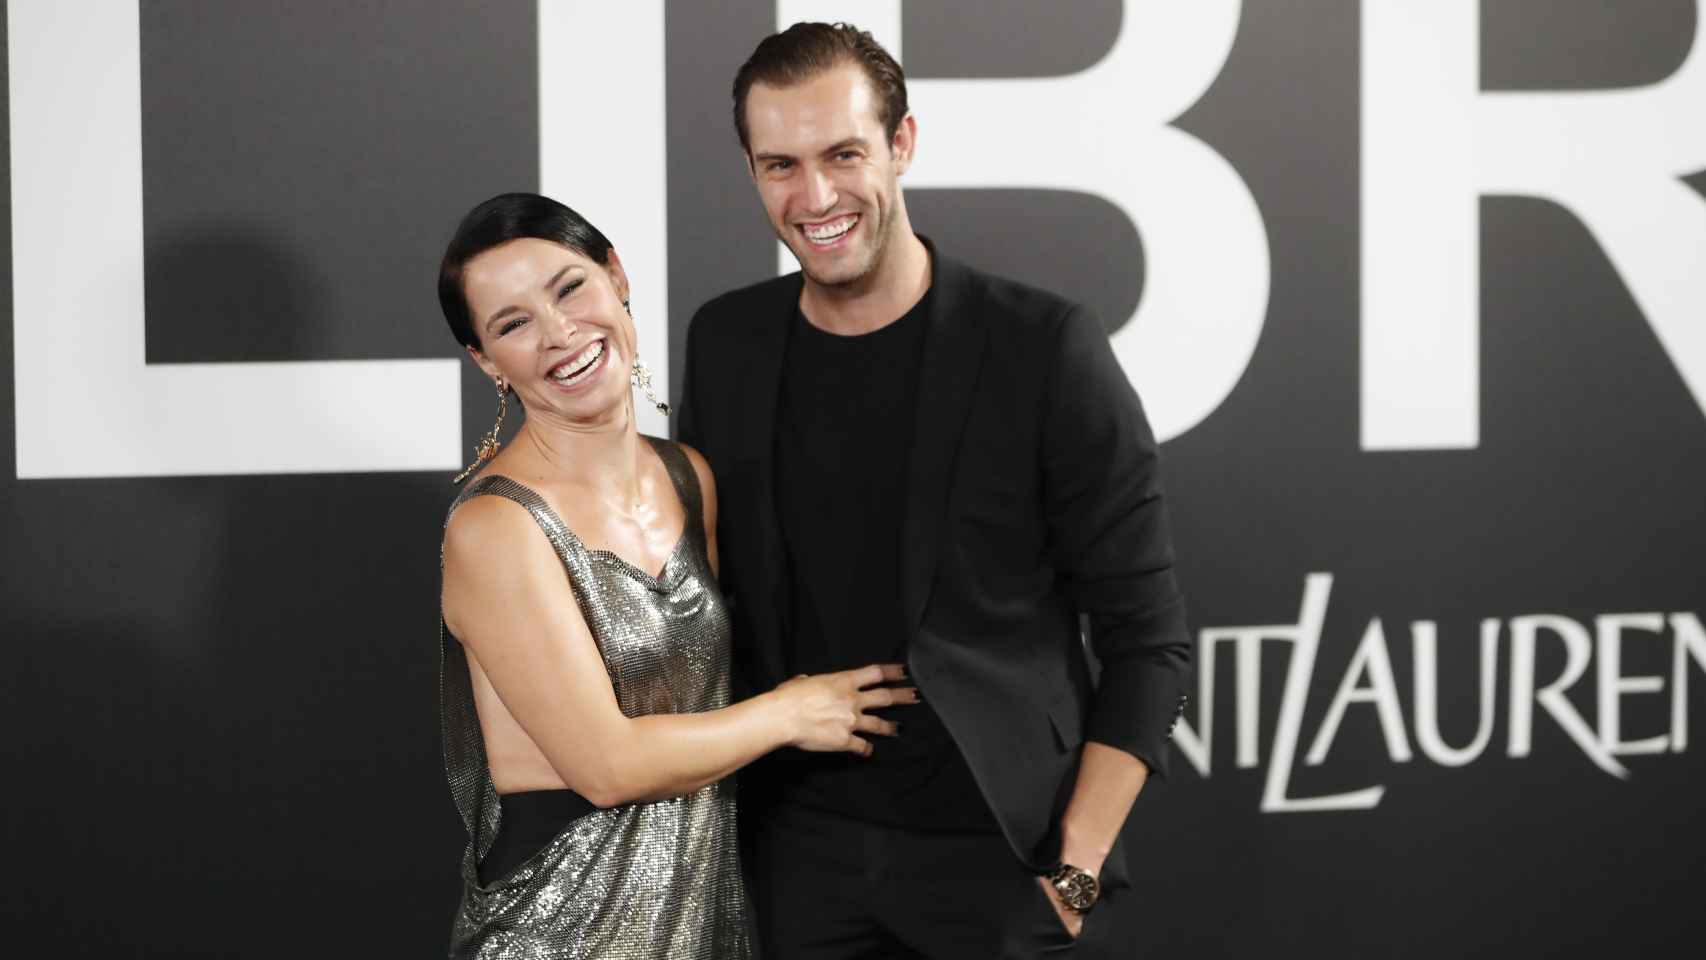 La cantante acudió a un evento en Madrid junto a su prometido, Miguel Ángel Herrera.